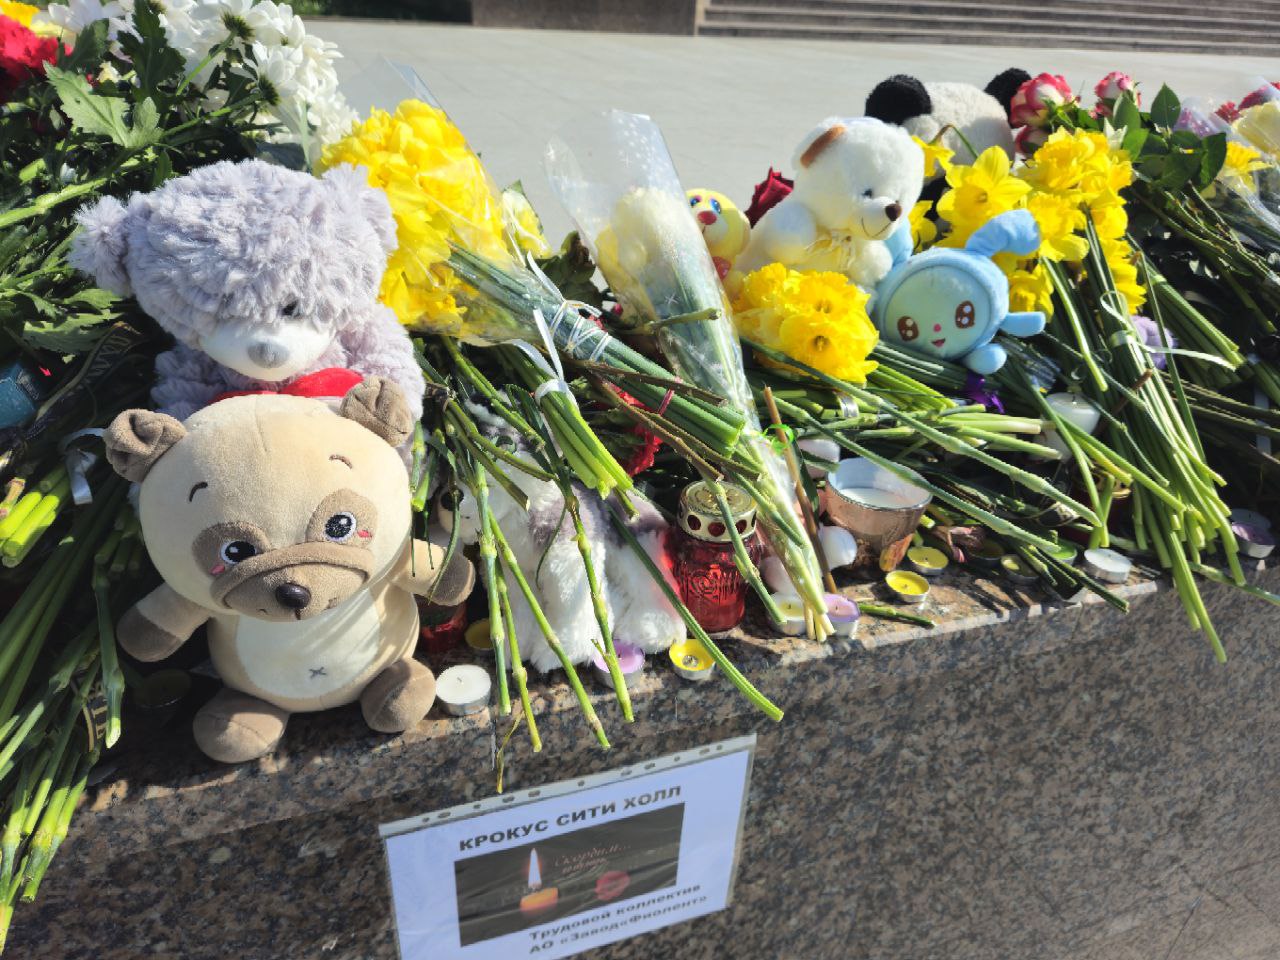 Мы приехали из посёлка, чтобы возложить цветы: крымчане выражают свою поддержку жертвам теракта